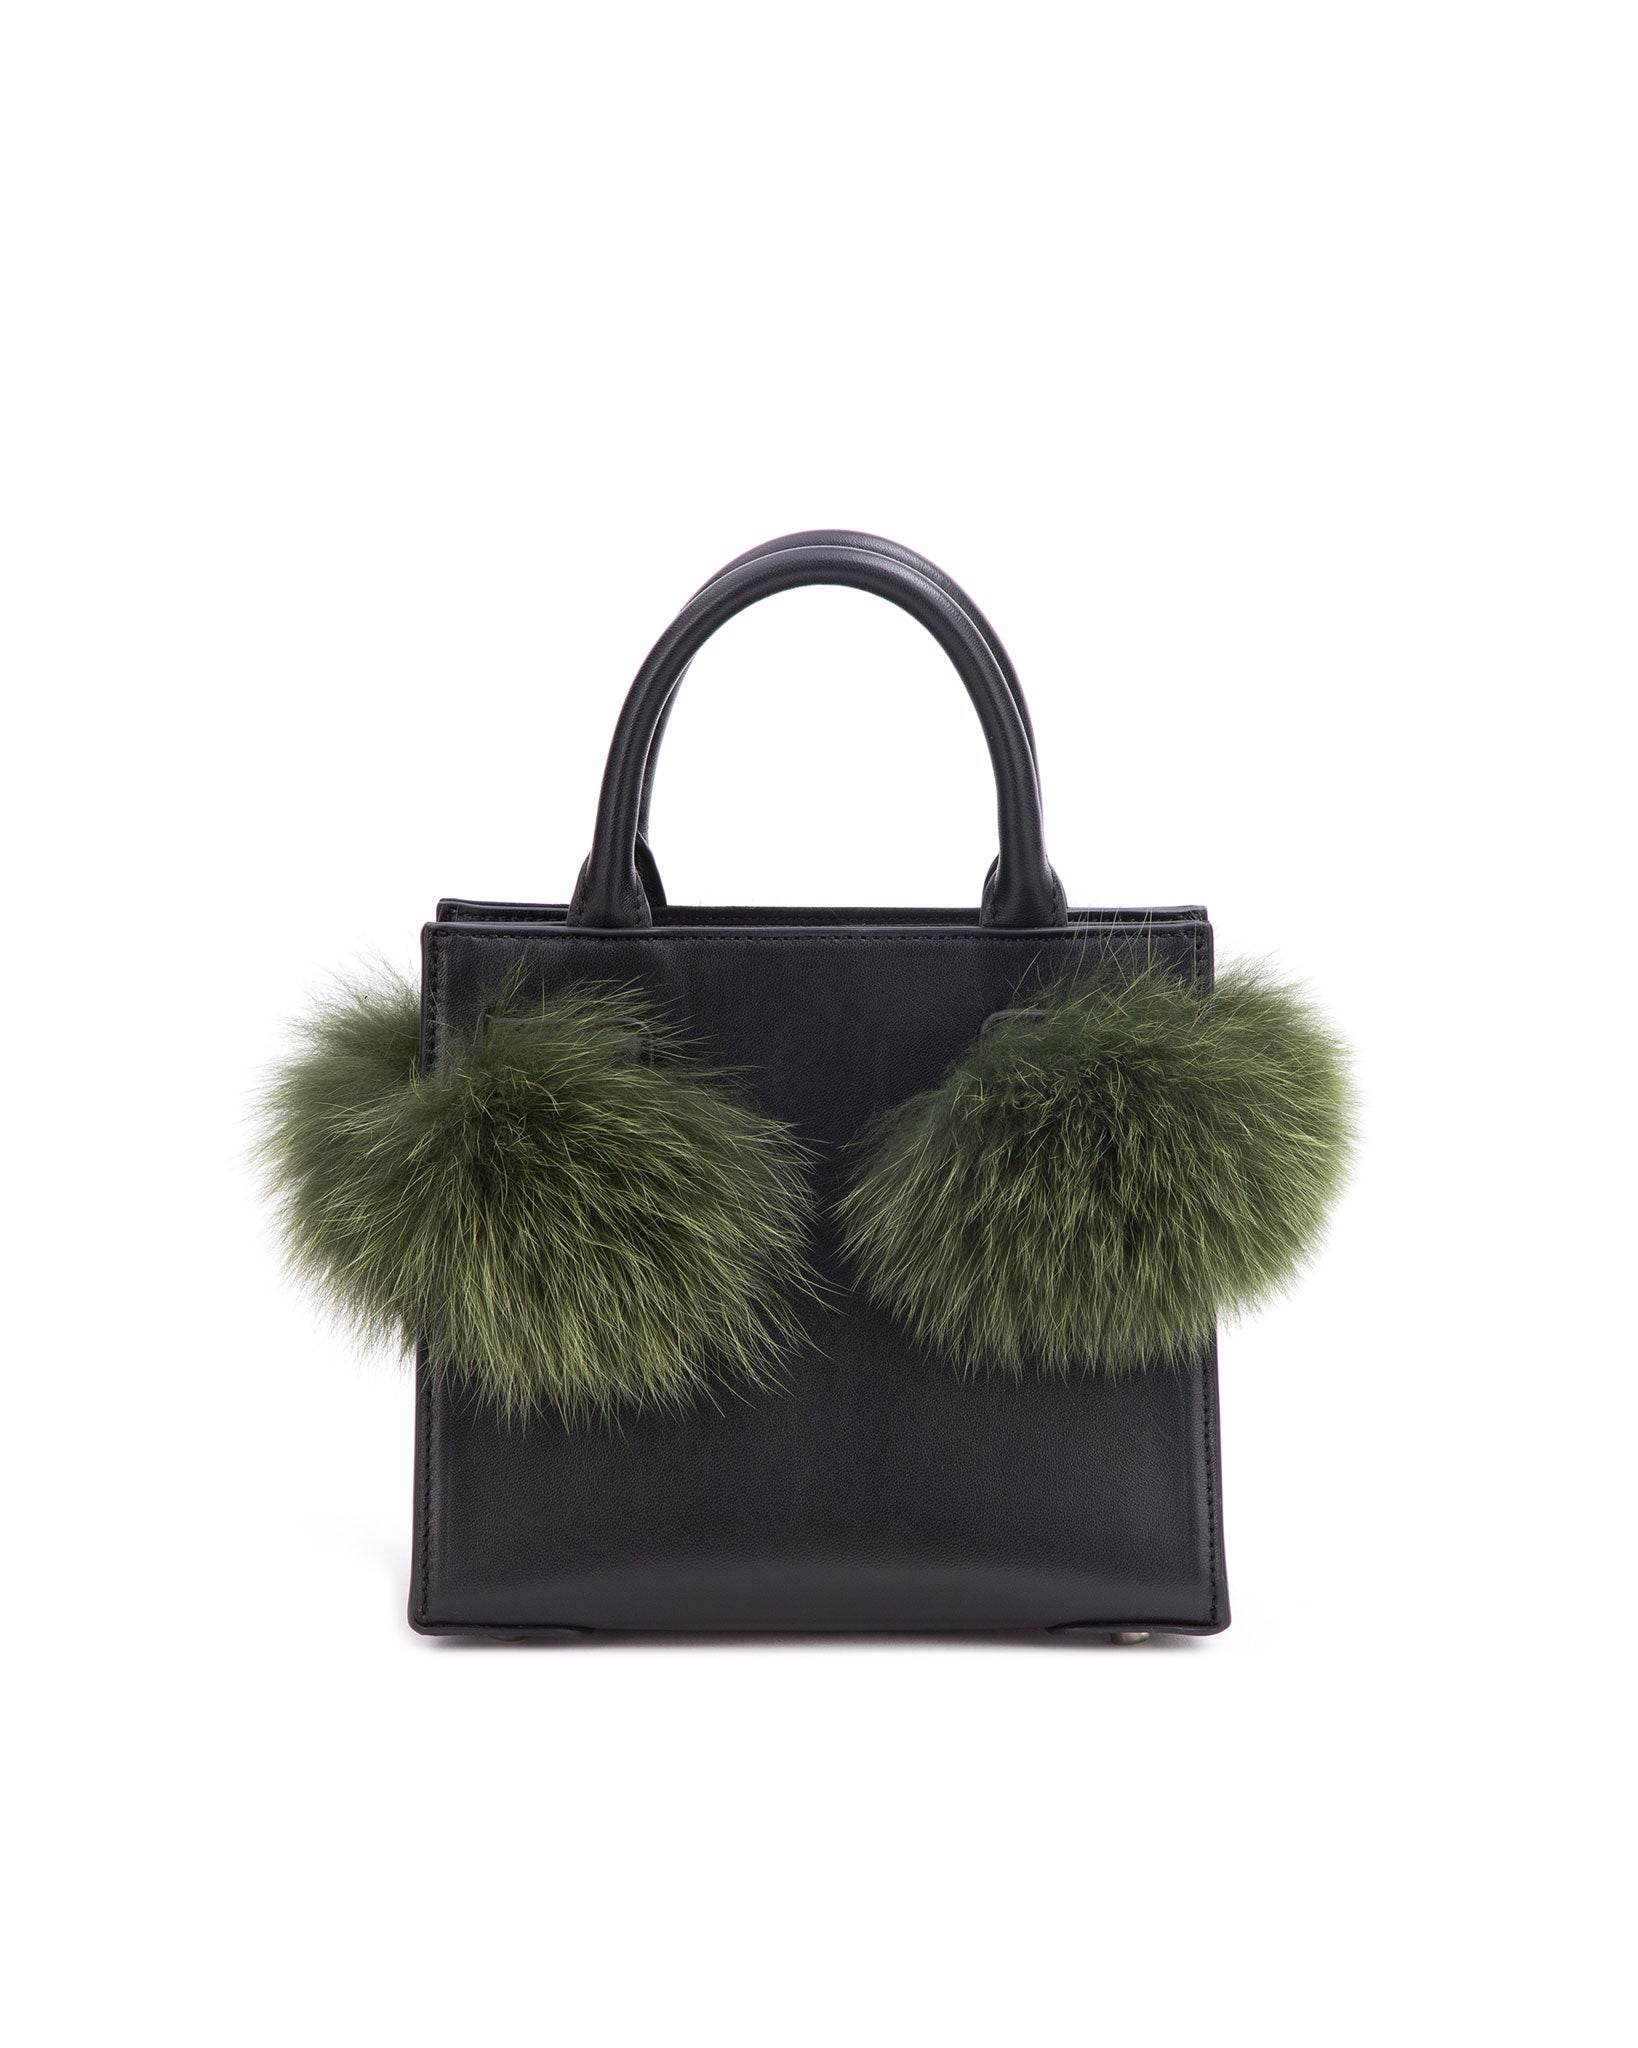 Brown Mink Fur Handbag, Mink Fur Shoulder Bag, Mink Fur Handbag, Fur  Handbag, Real Fur Bag, Handmade Fur Bag